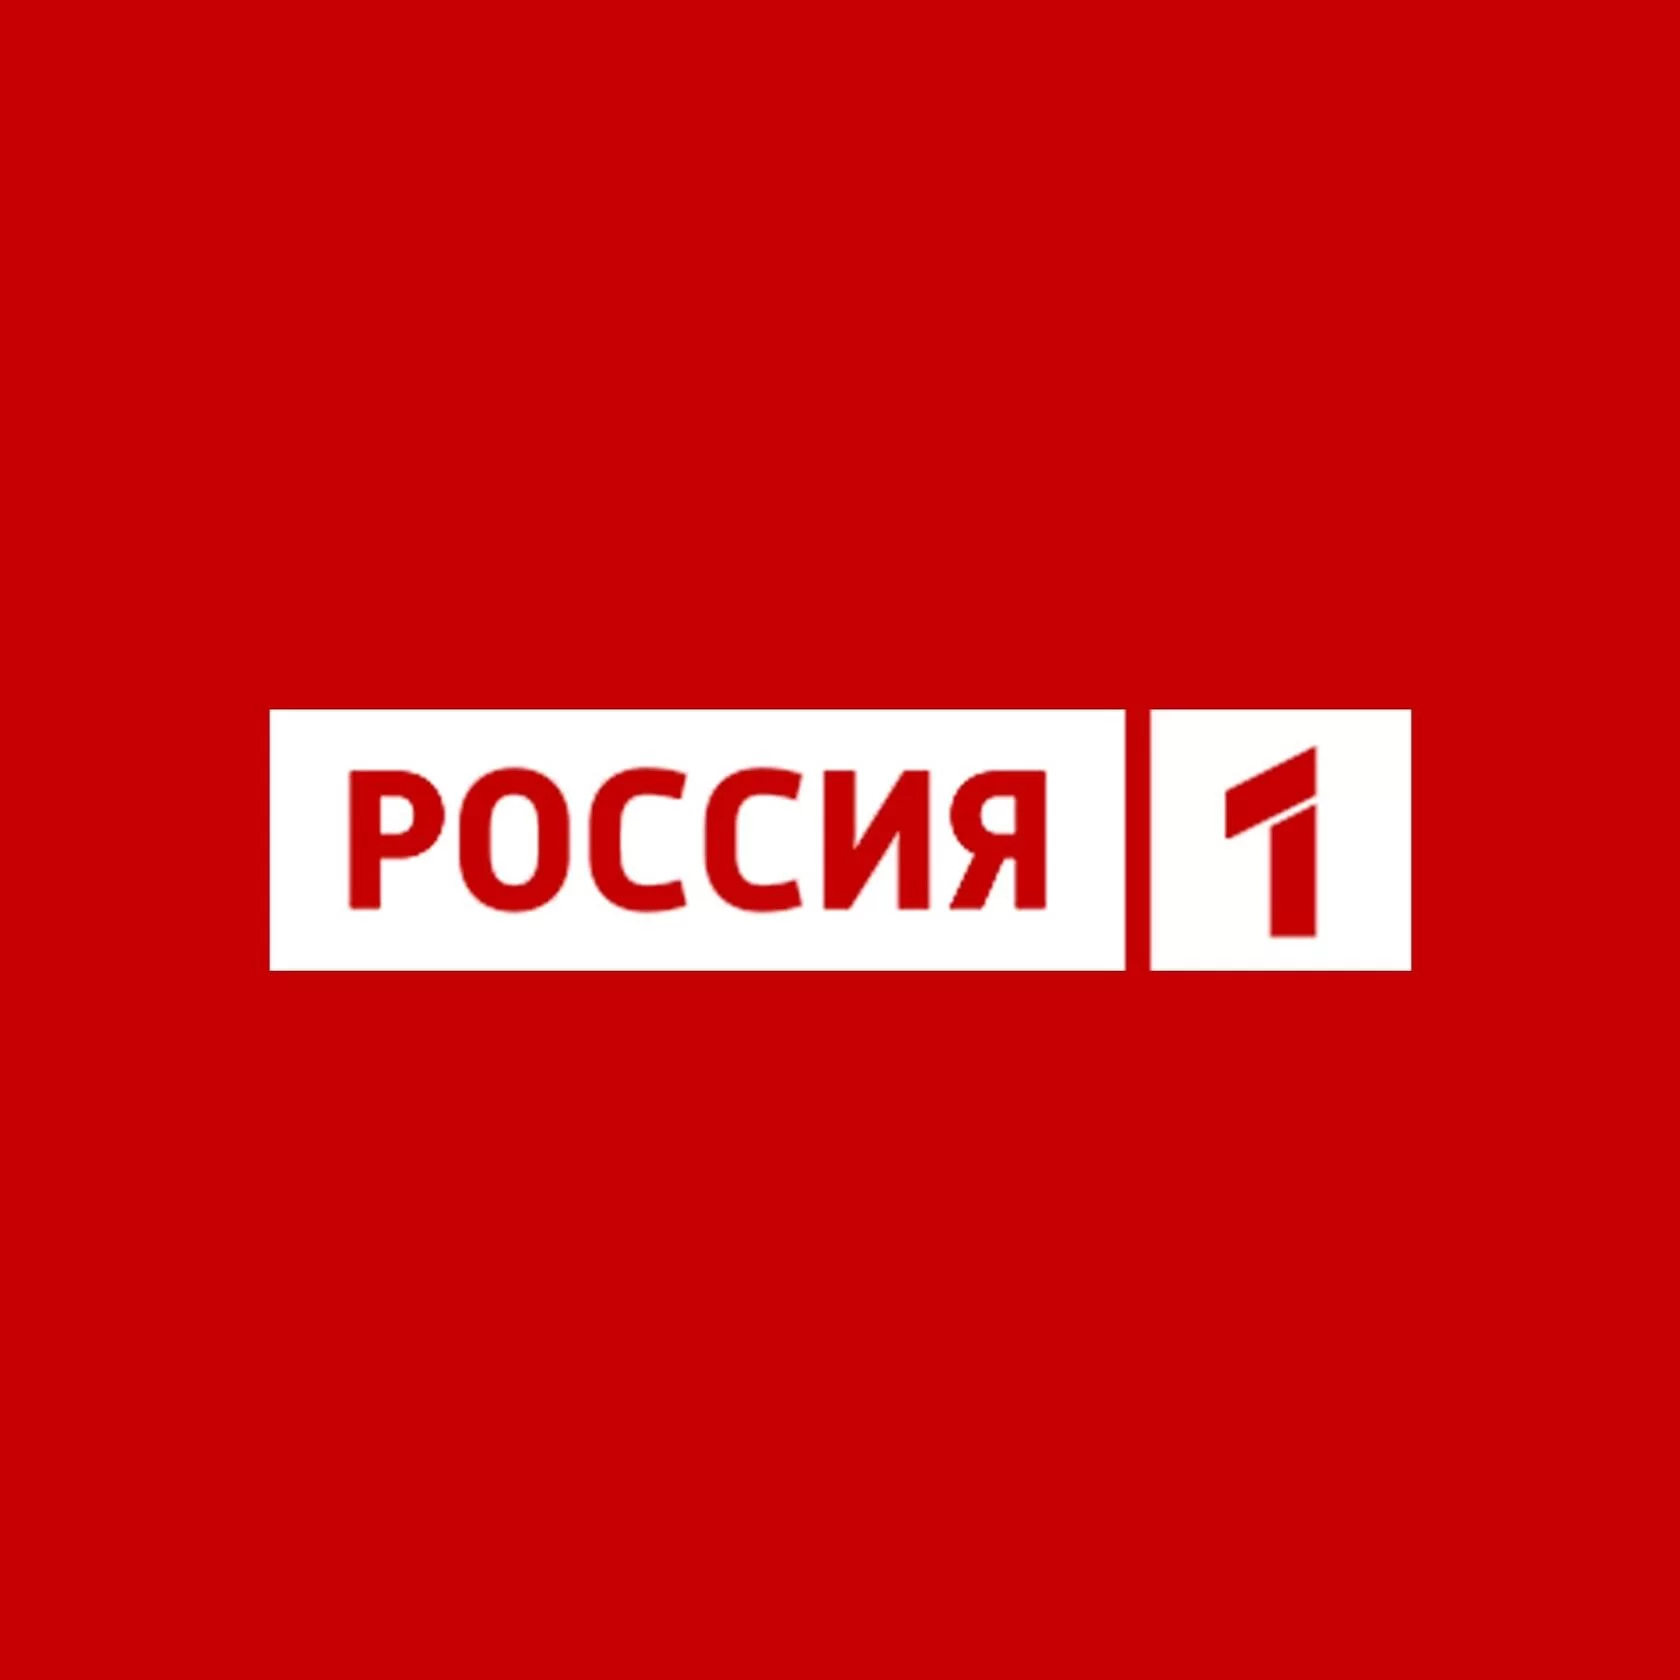 Russia-1